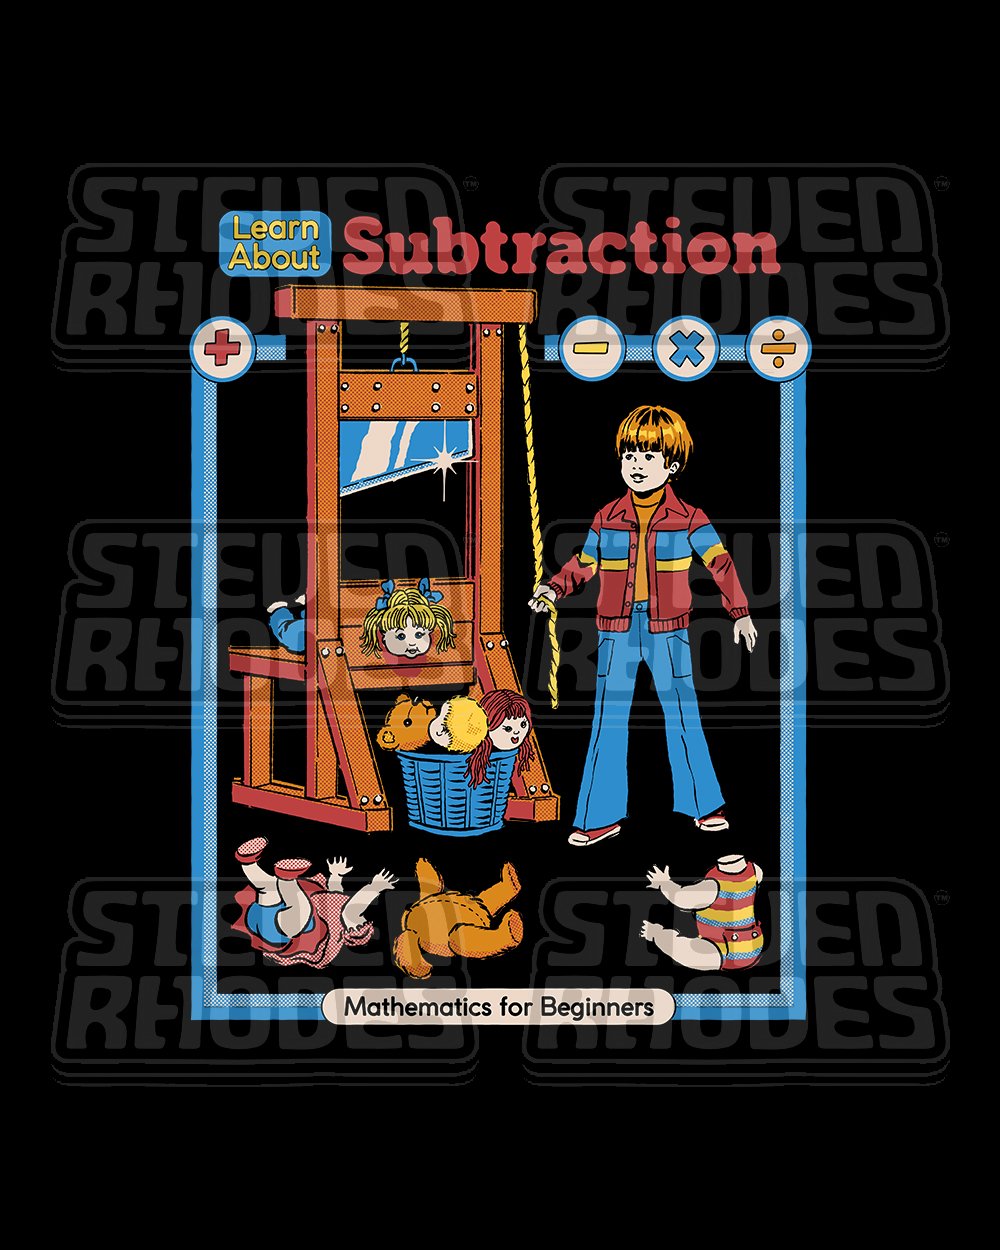 Learn About Subtraction T-Shirt Australia Online #colour_black